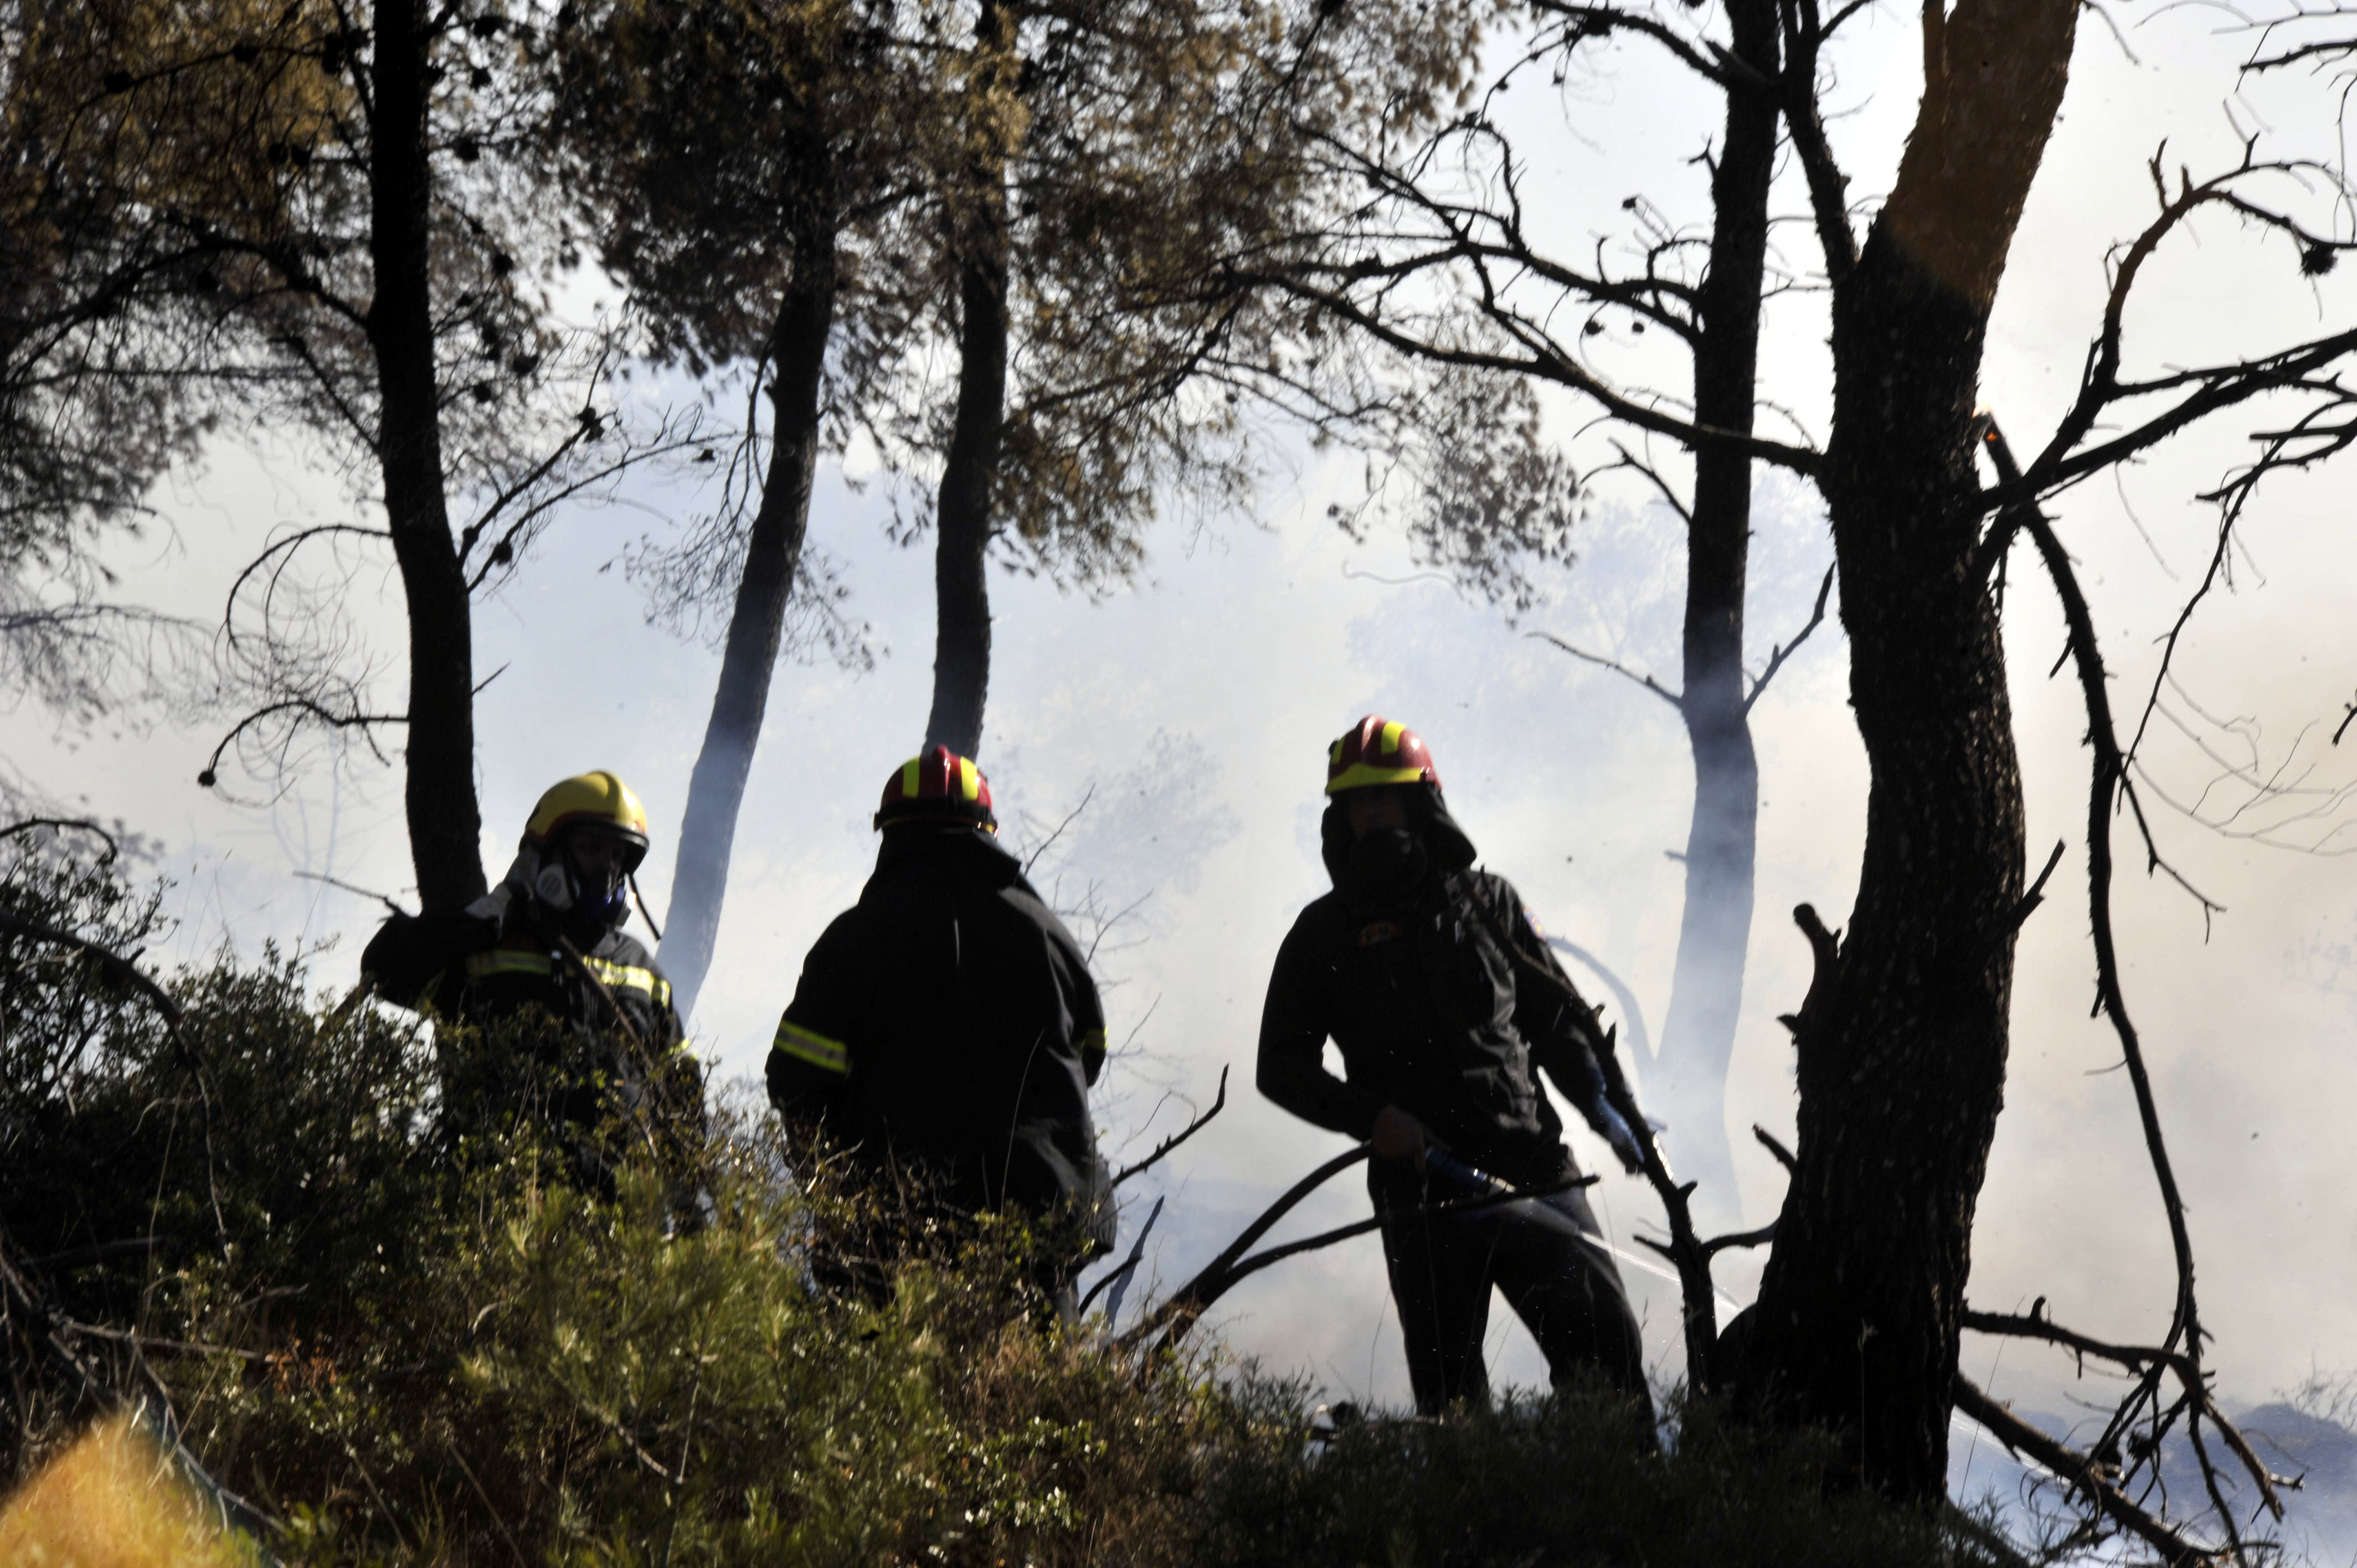 Οι δόκιμοι πυροσβέστες κατά των εποχικών πυροσβεστών που επαναπροσλήφθηκαν